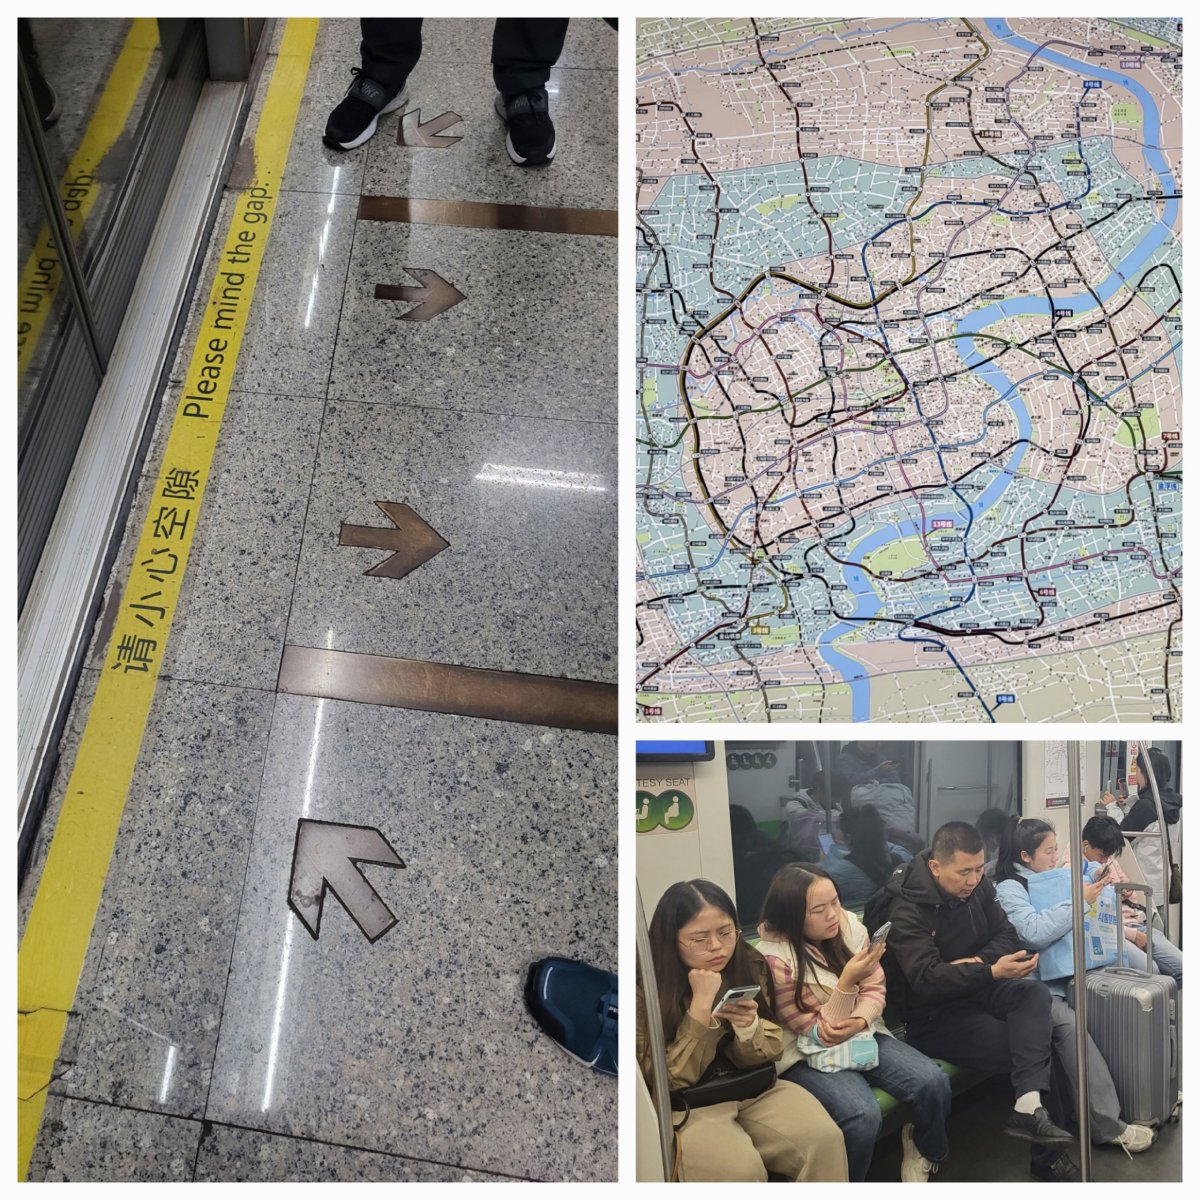 Šanghajské metro - současně se tu nastupuje a vystupuje